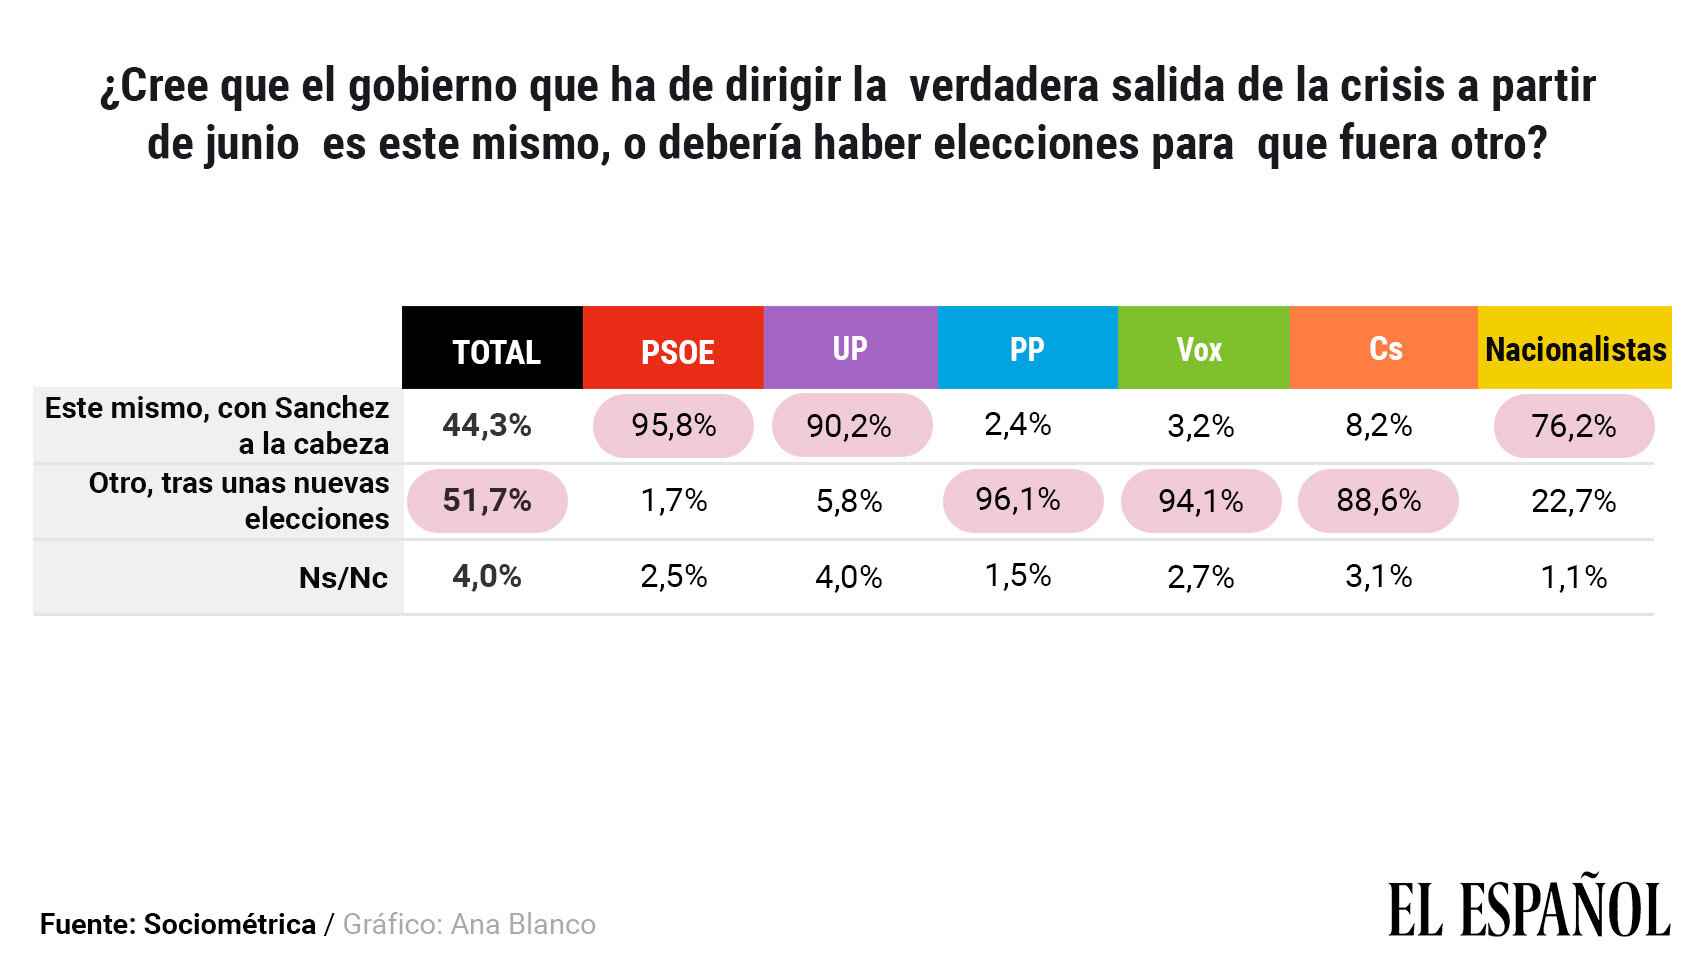 Opinión de los españoles disgregada por partidos políticos.